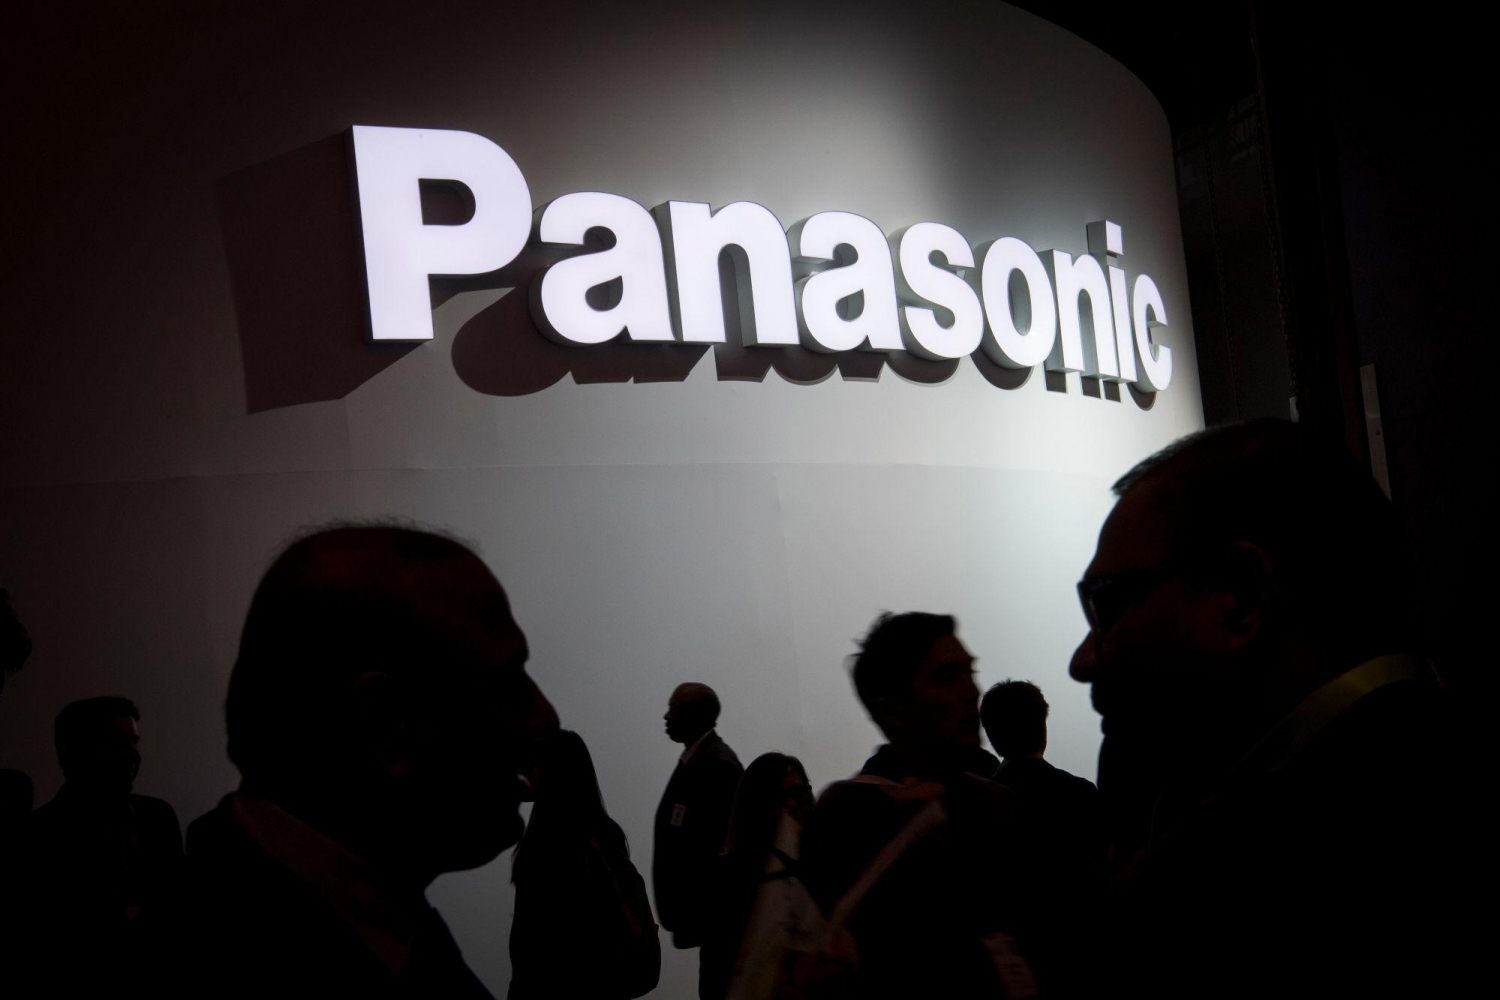 Panasonic đã bán toàn bộ cổ phần tại Tesla